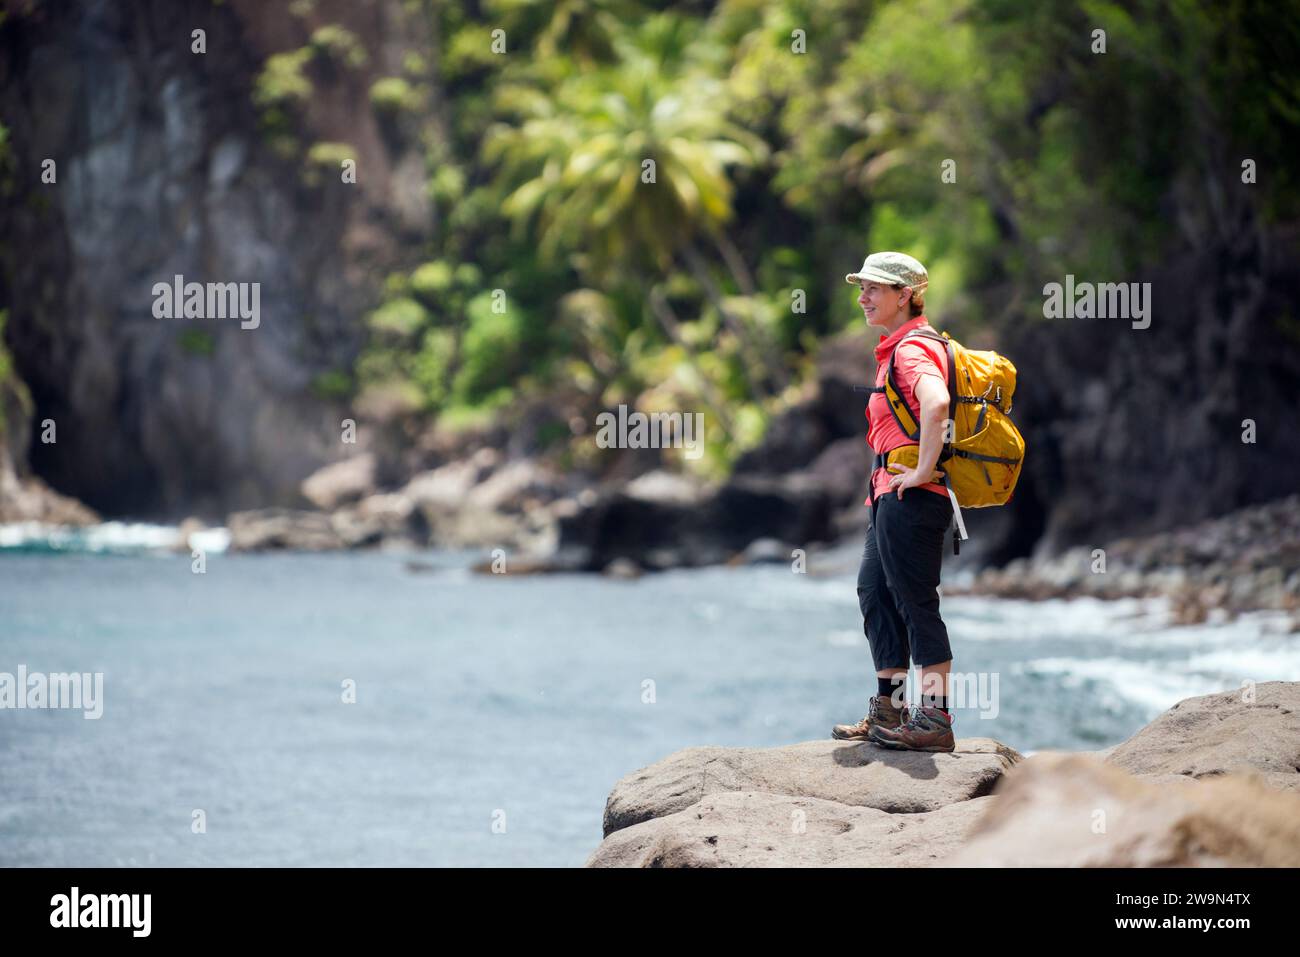 Un viaggiatore con zaino in spalla si gode la vista del segmento 14 del Waitukubuli National Trail sulla riva del Mar dei Caraibi sull'isola di Dominica. Foto Stock